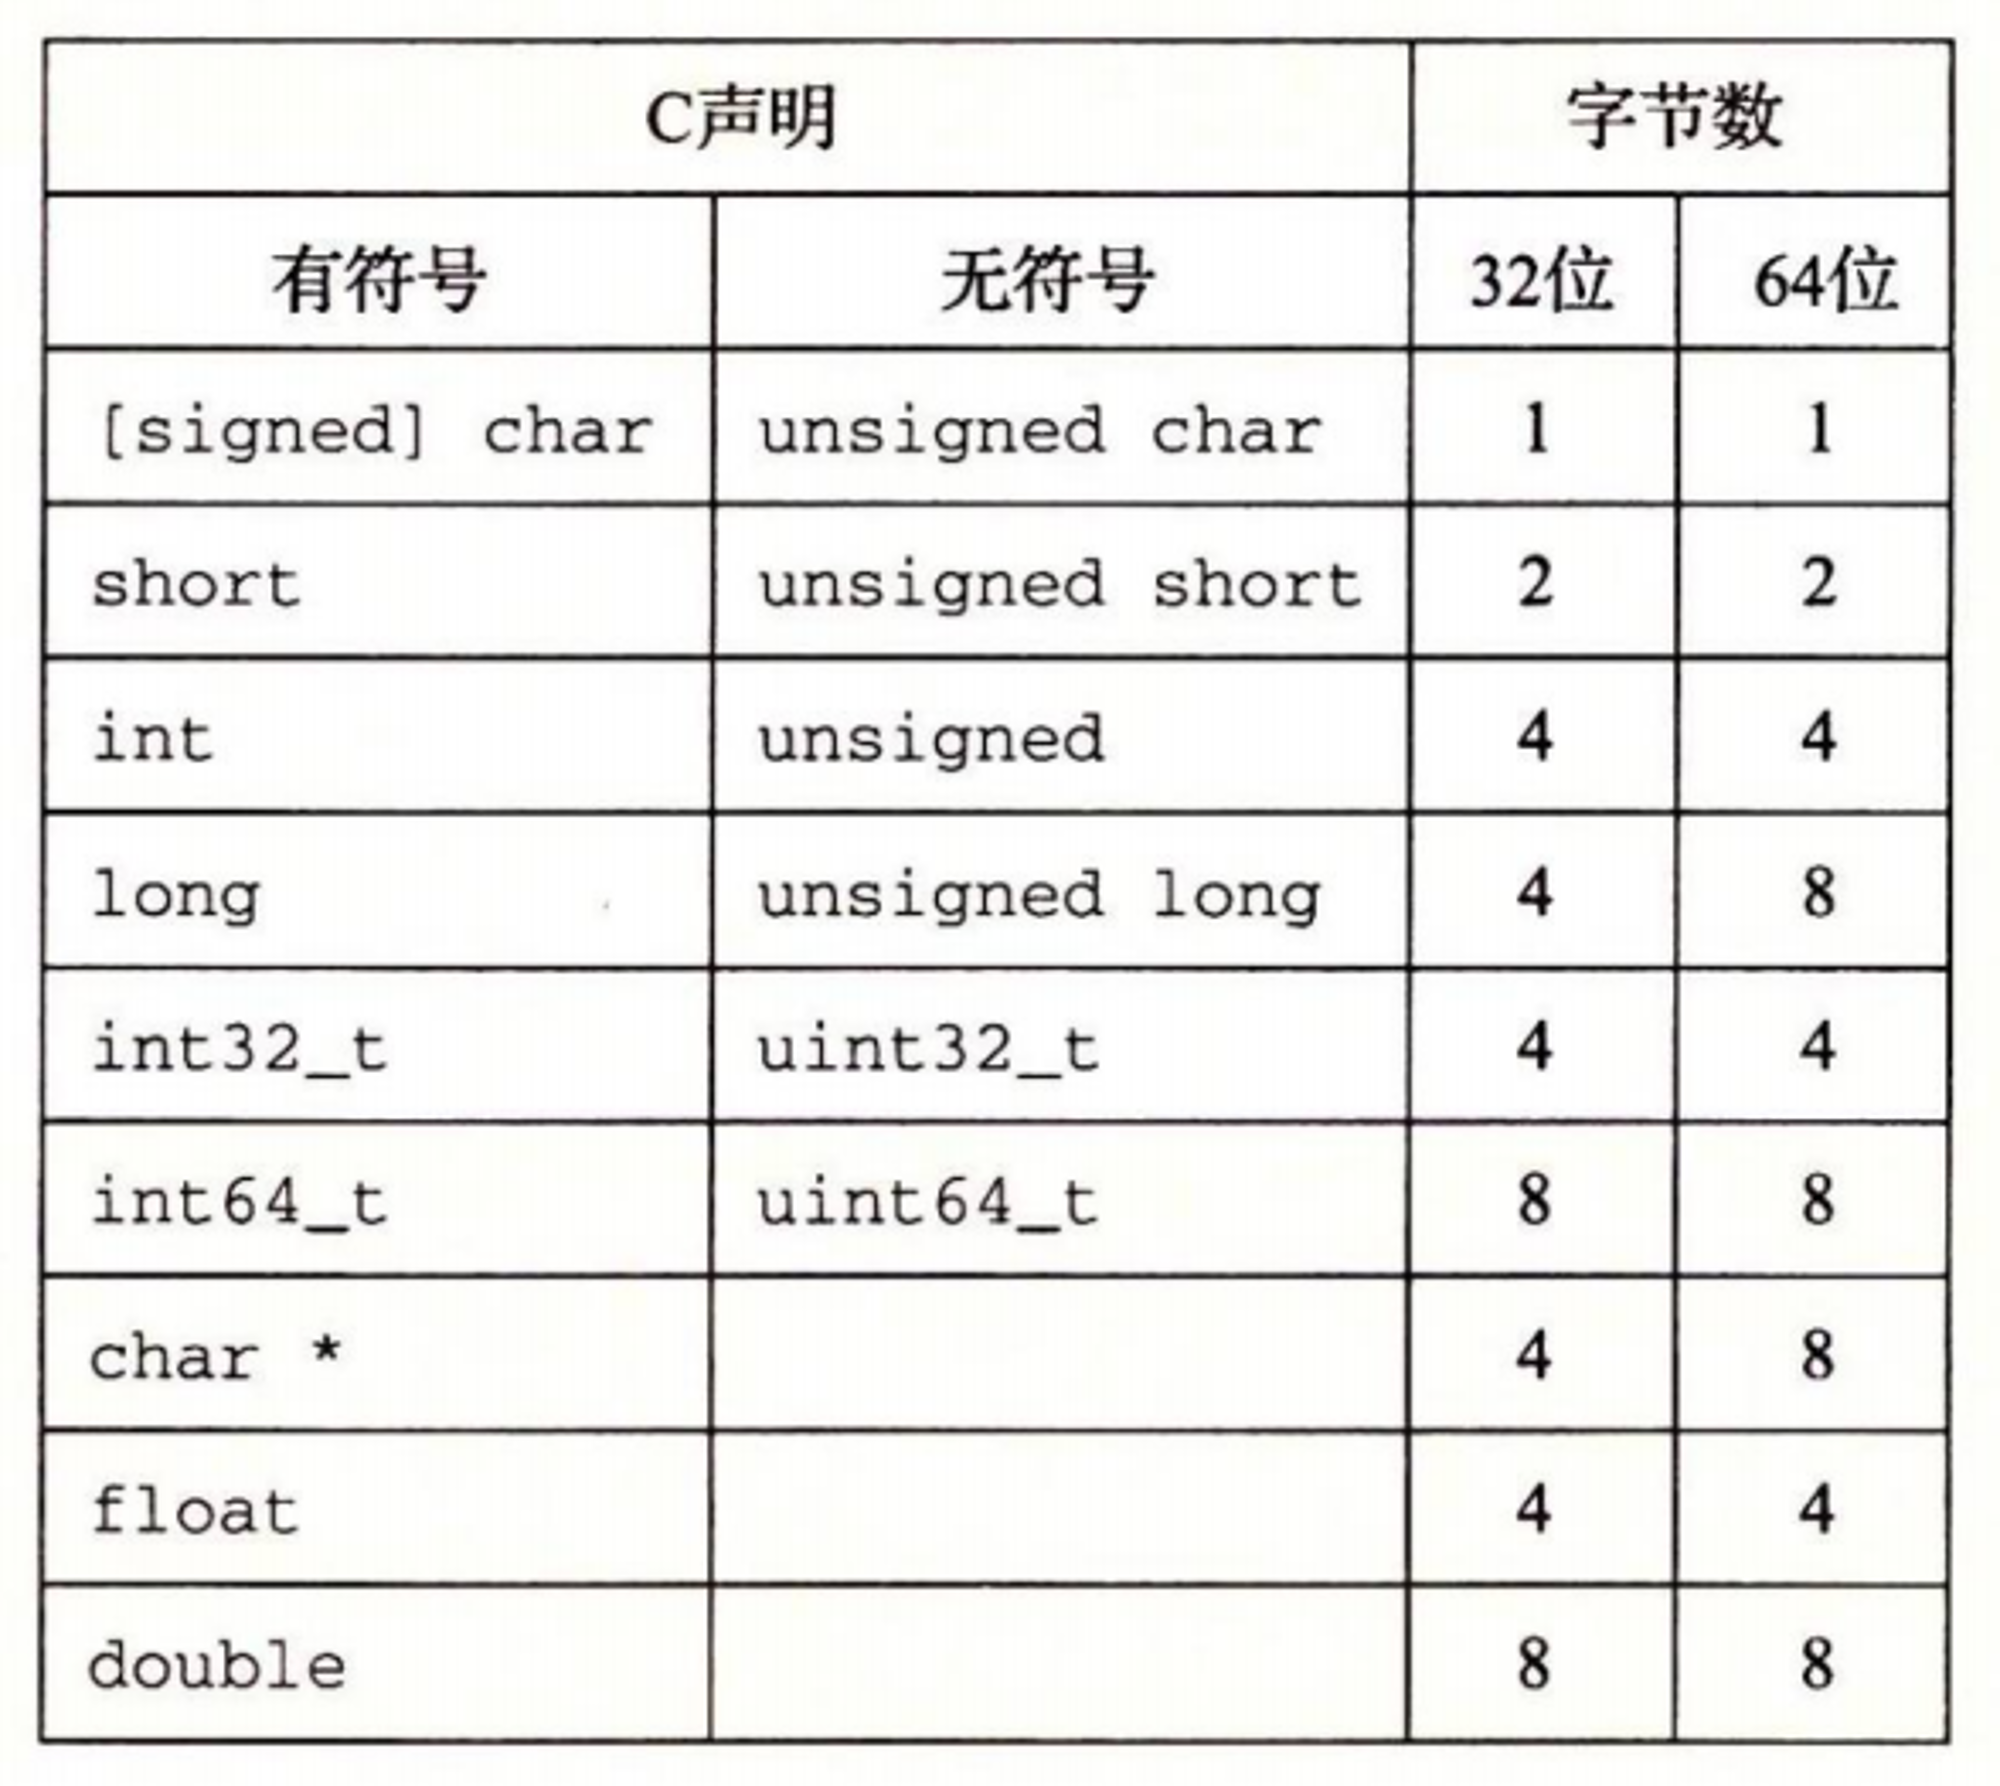 图2-3 基本 C 数据类型的典型大小(以字节为单位)。分配的字节数受程序是如何编译的影响而变化。本图给出的是32位和64位程序的典型值